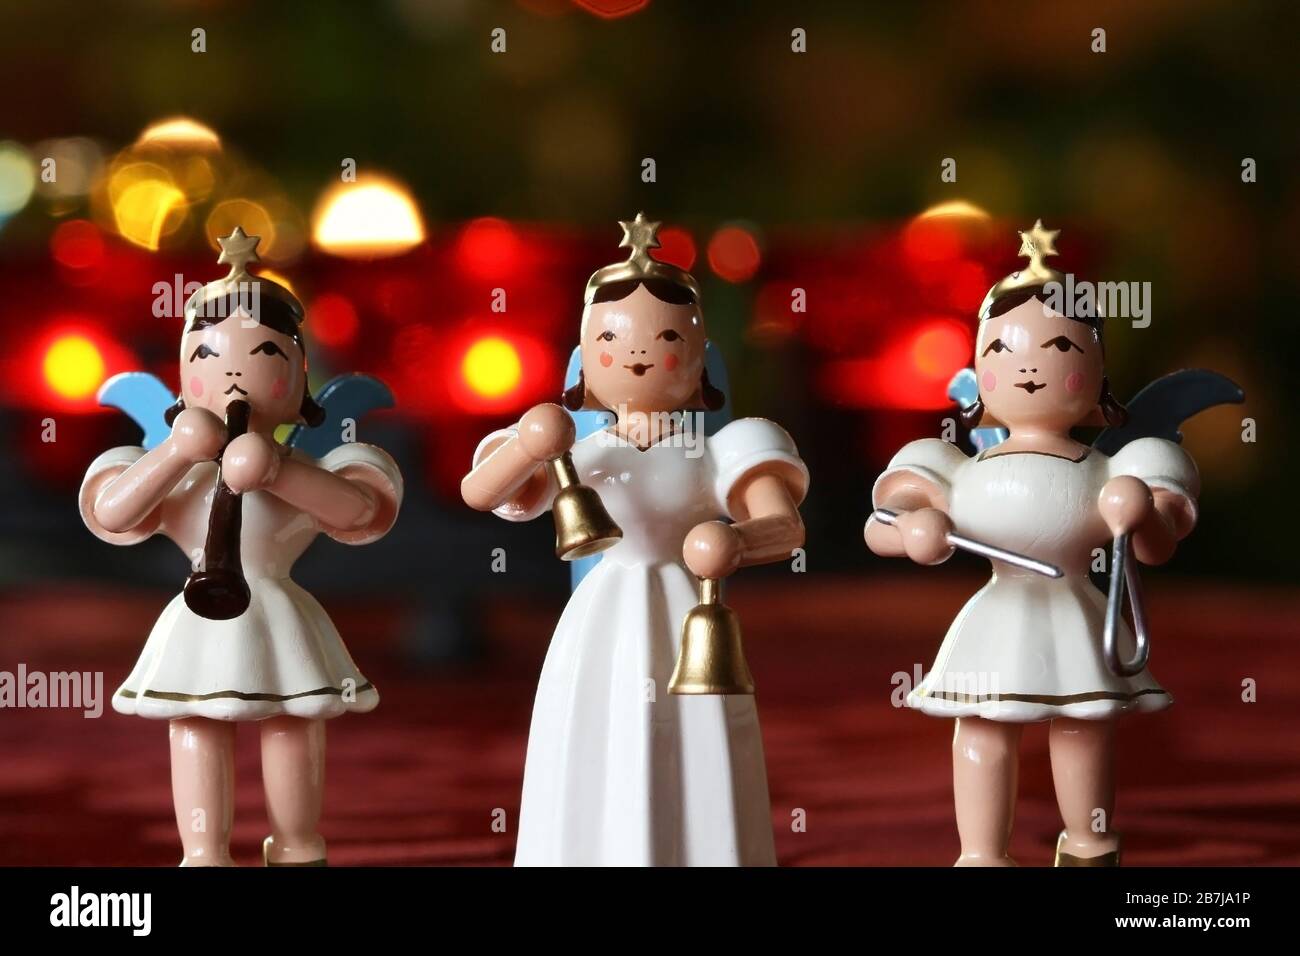 Concerto dell'Avvento: Tre angeli decorativi che fanno musica davanti alle luci della corona dell'Avvento Foto Stock